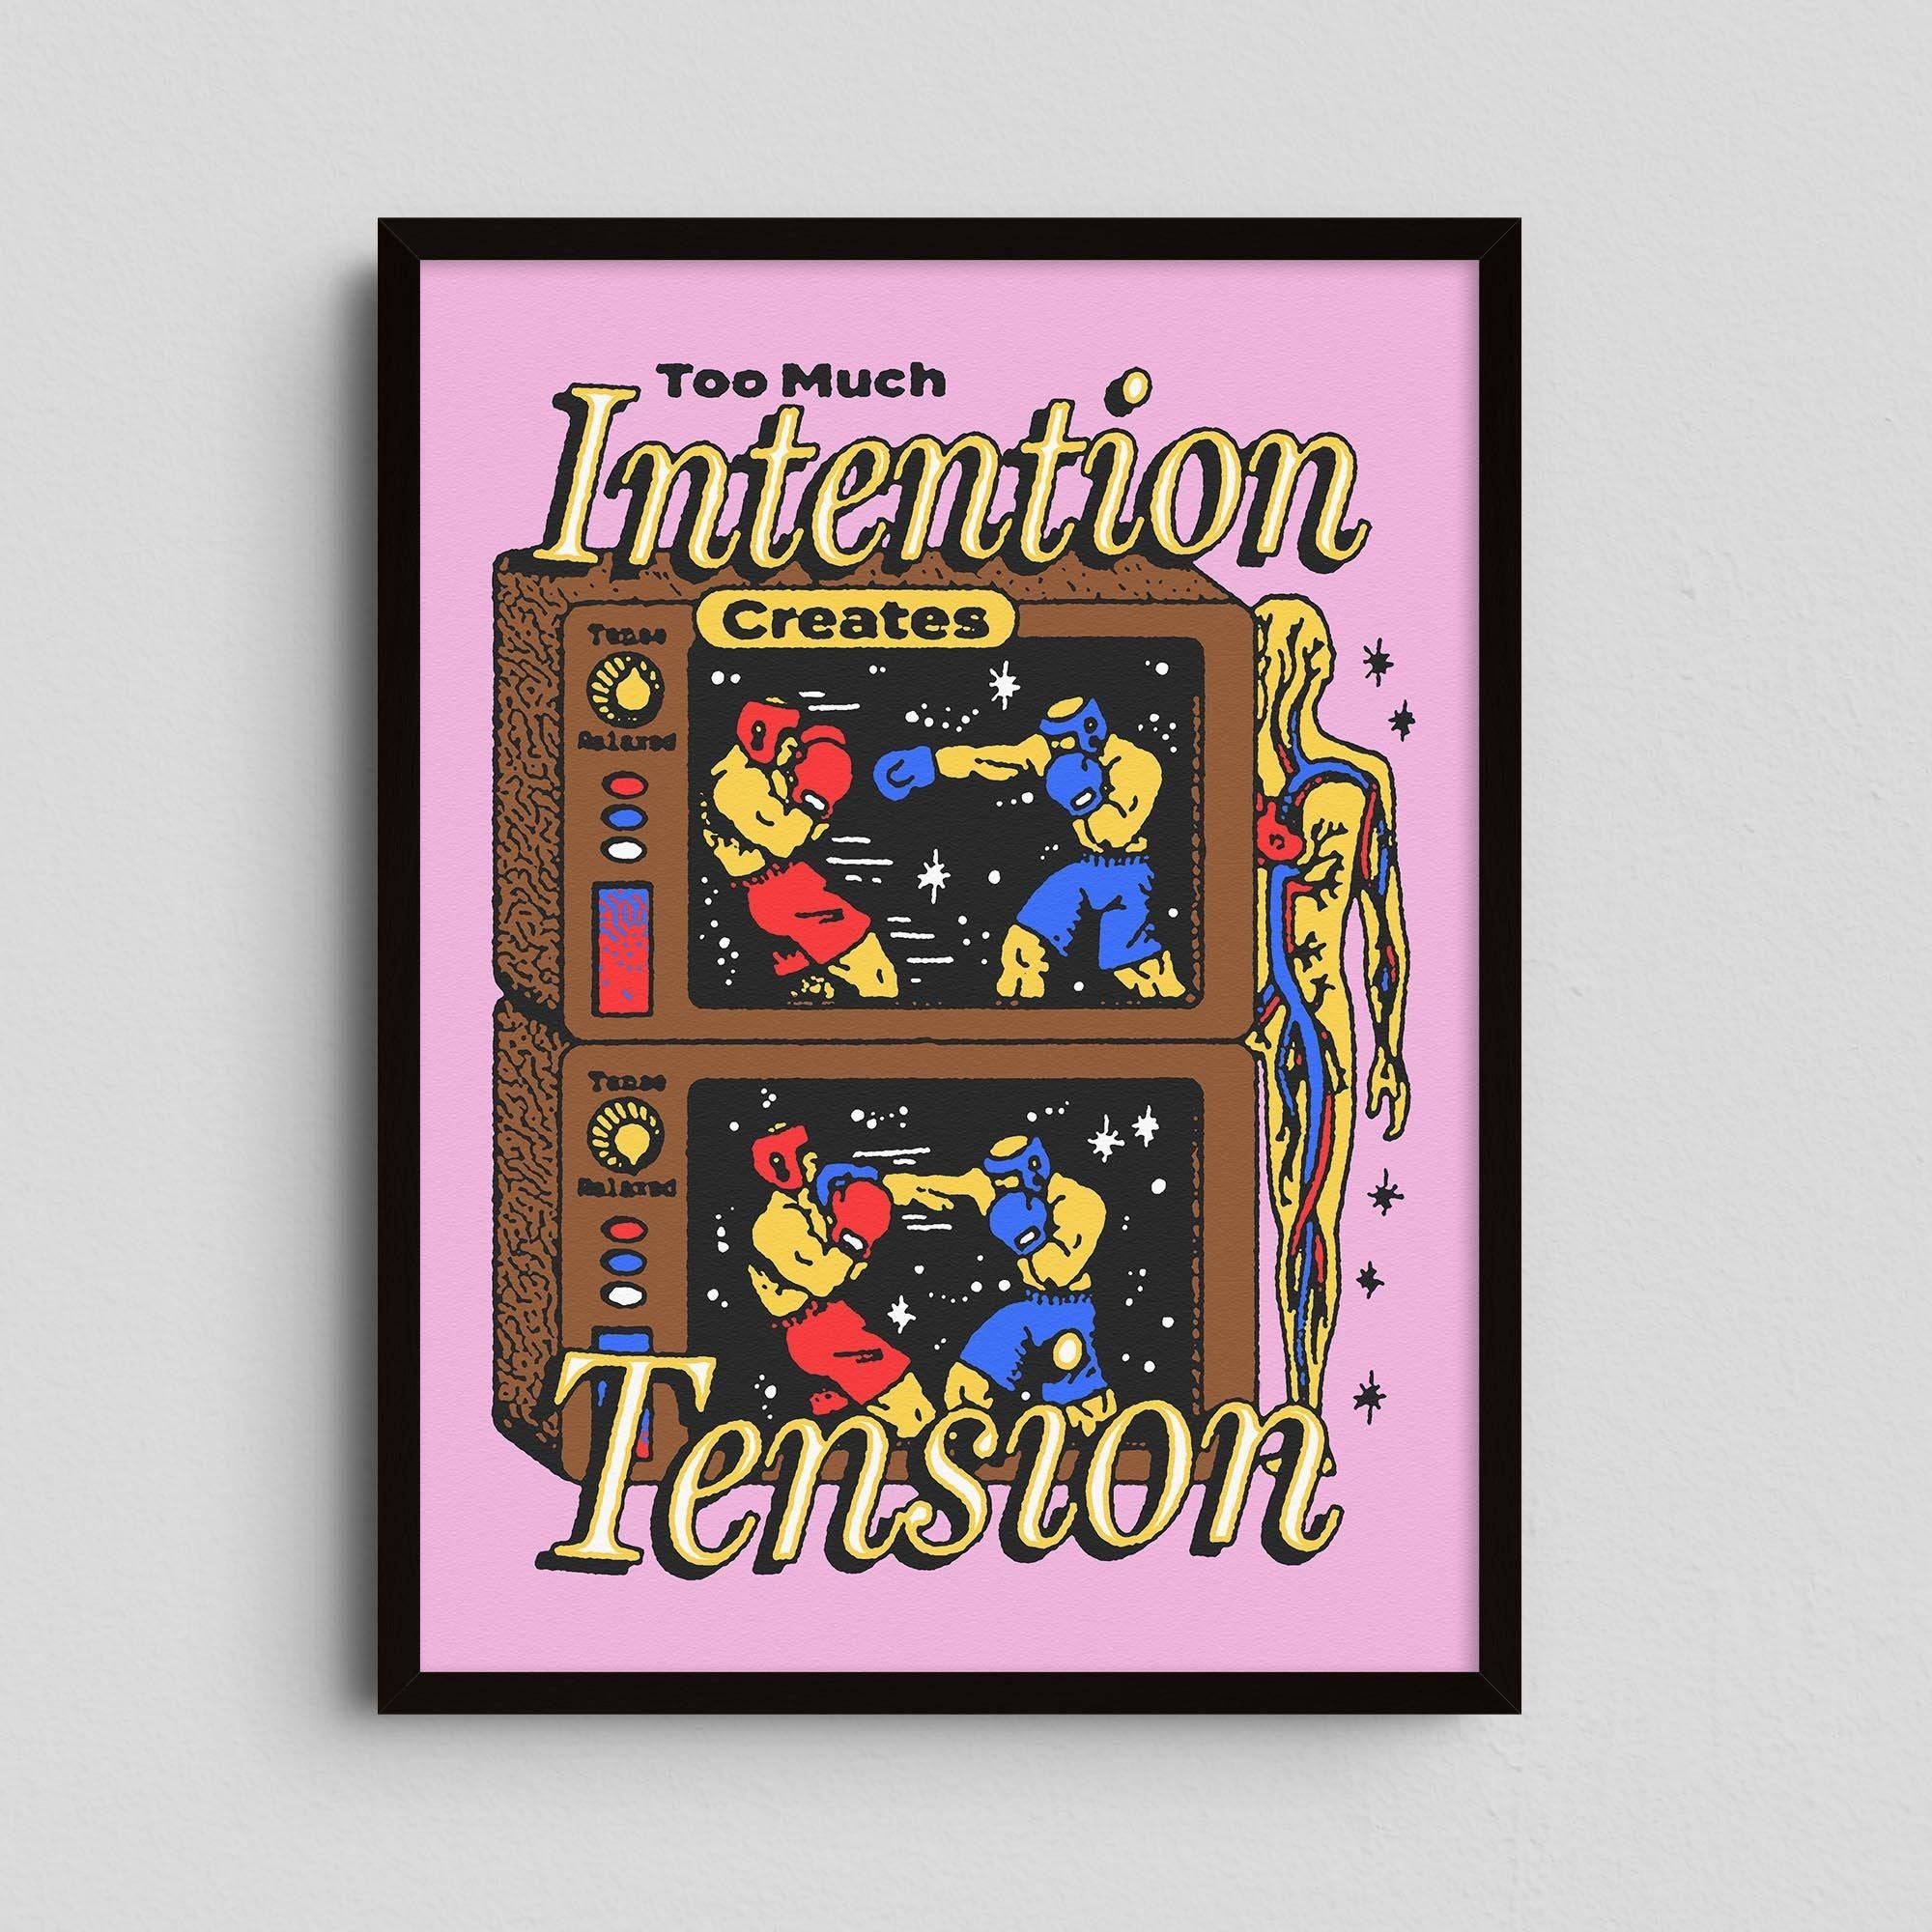 Intention Creates Tension - Dani Velasco